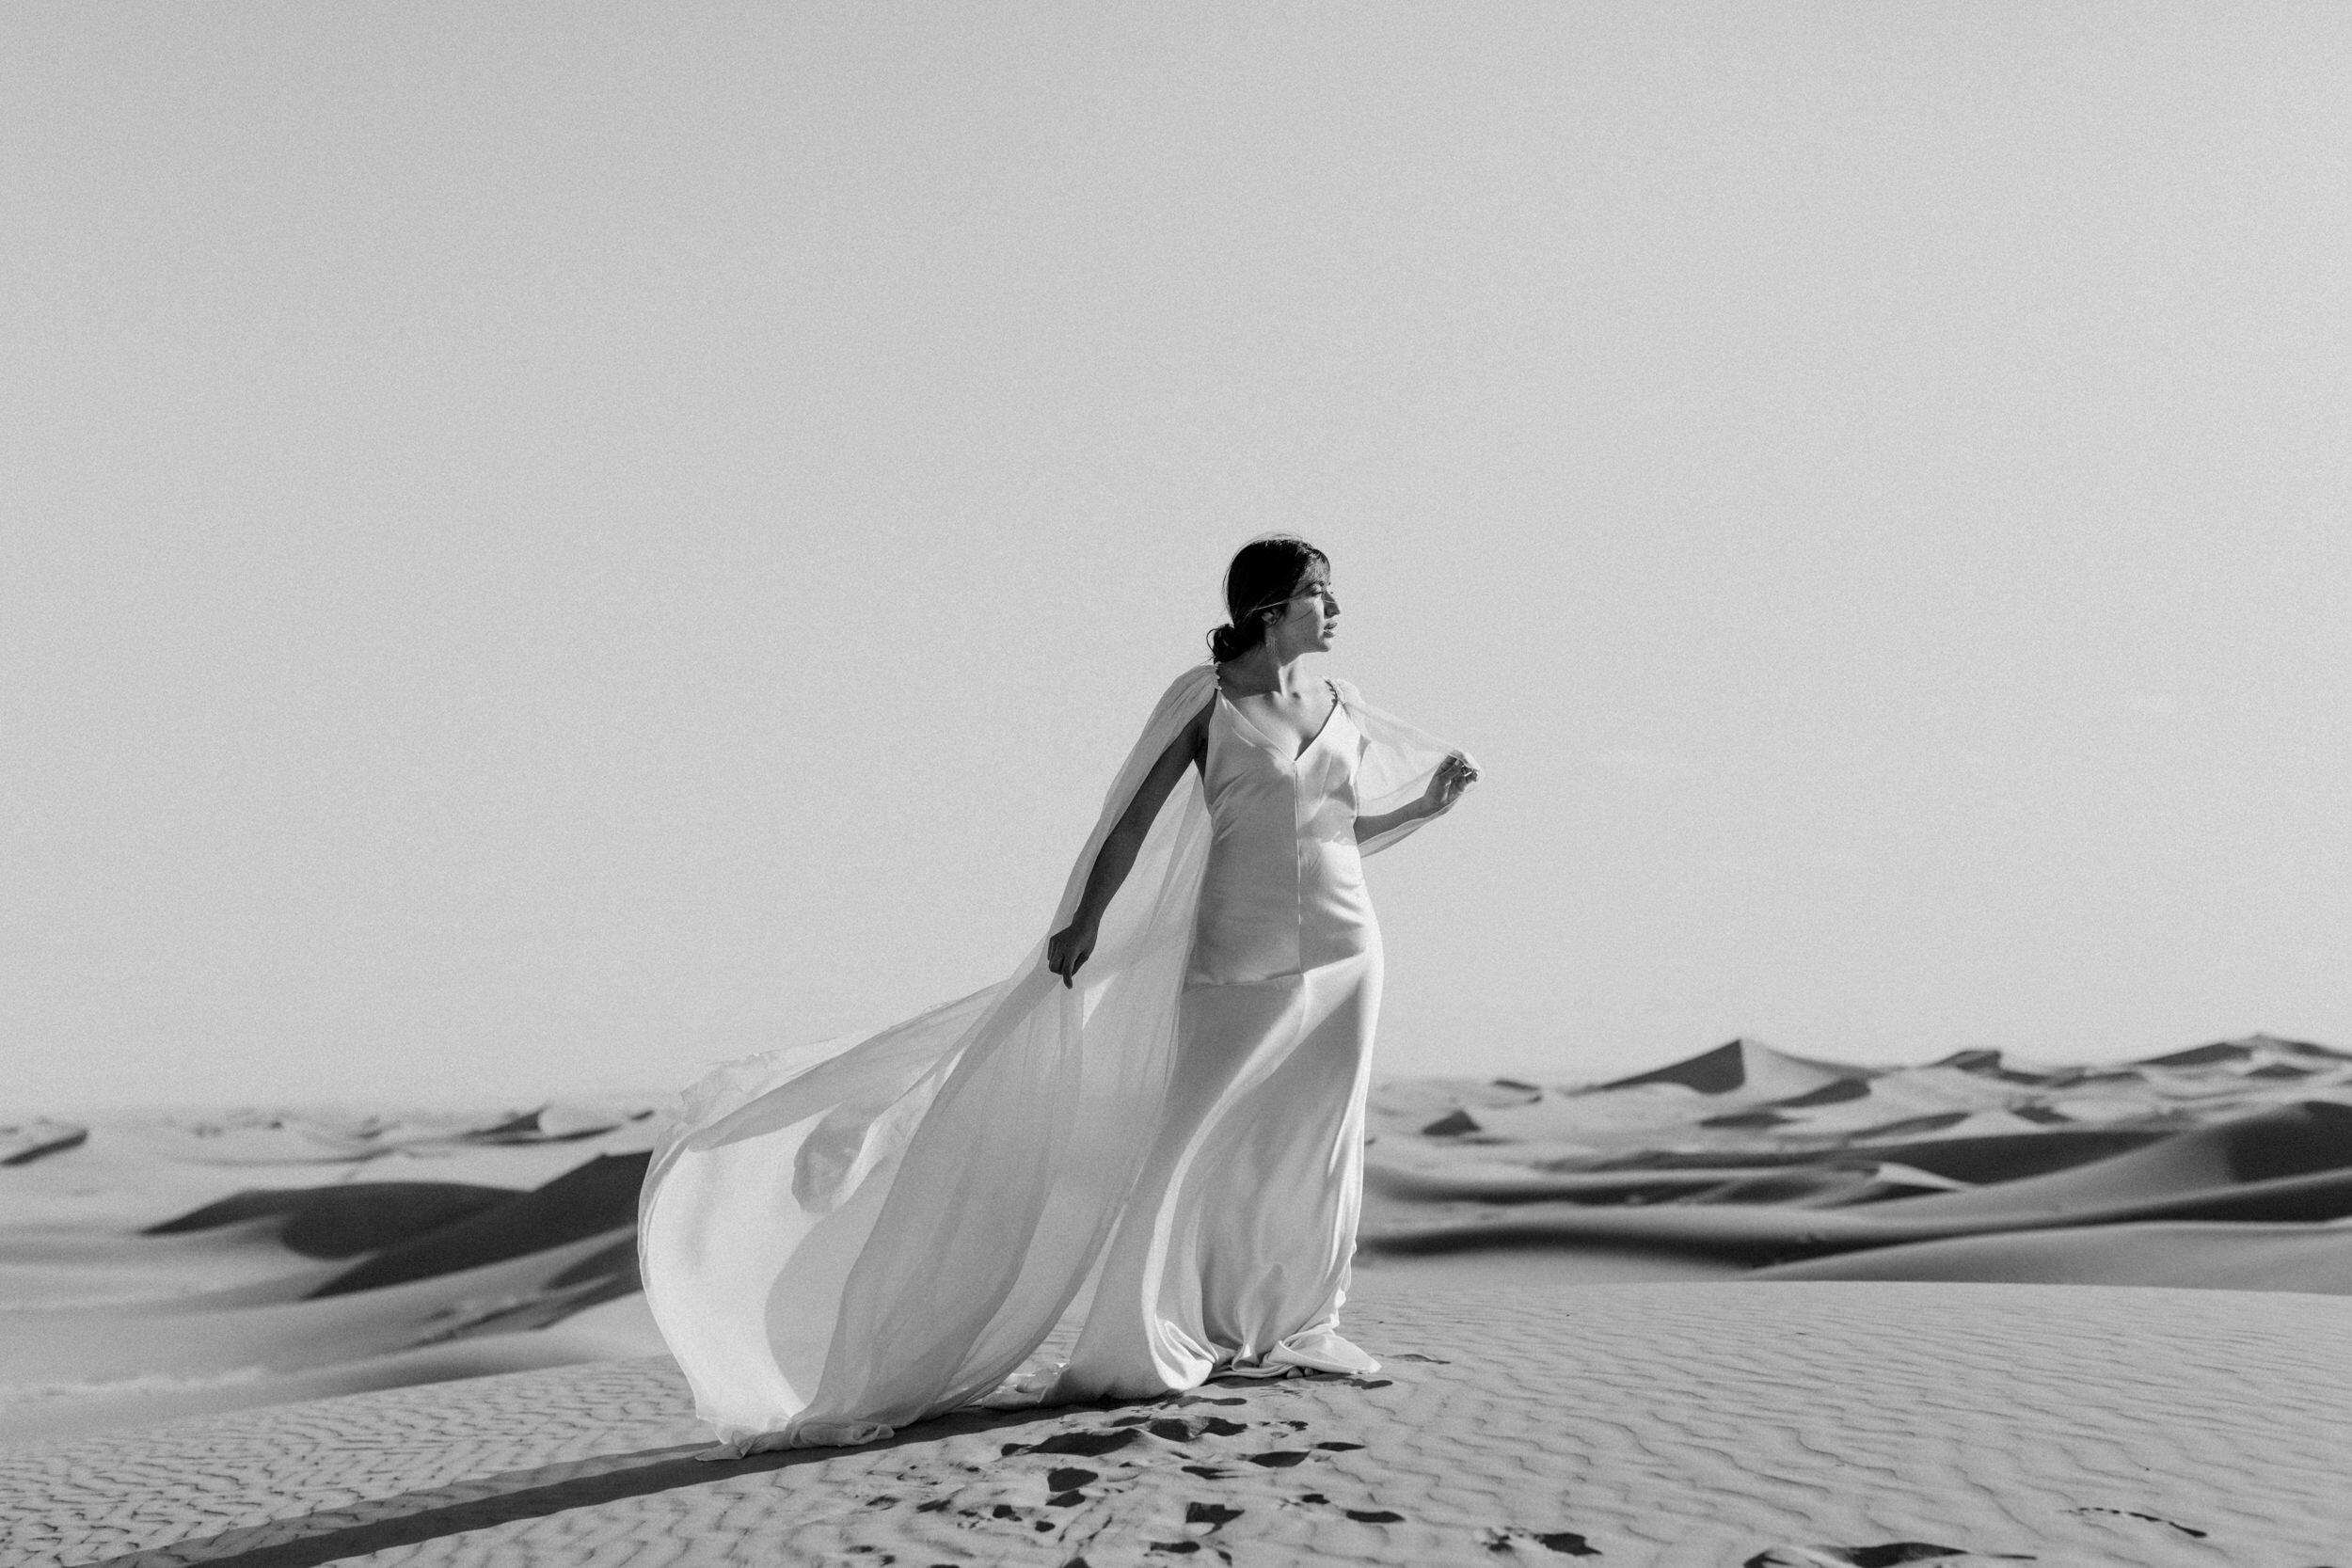  desert elopement minimal wedding look 